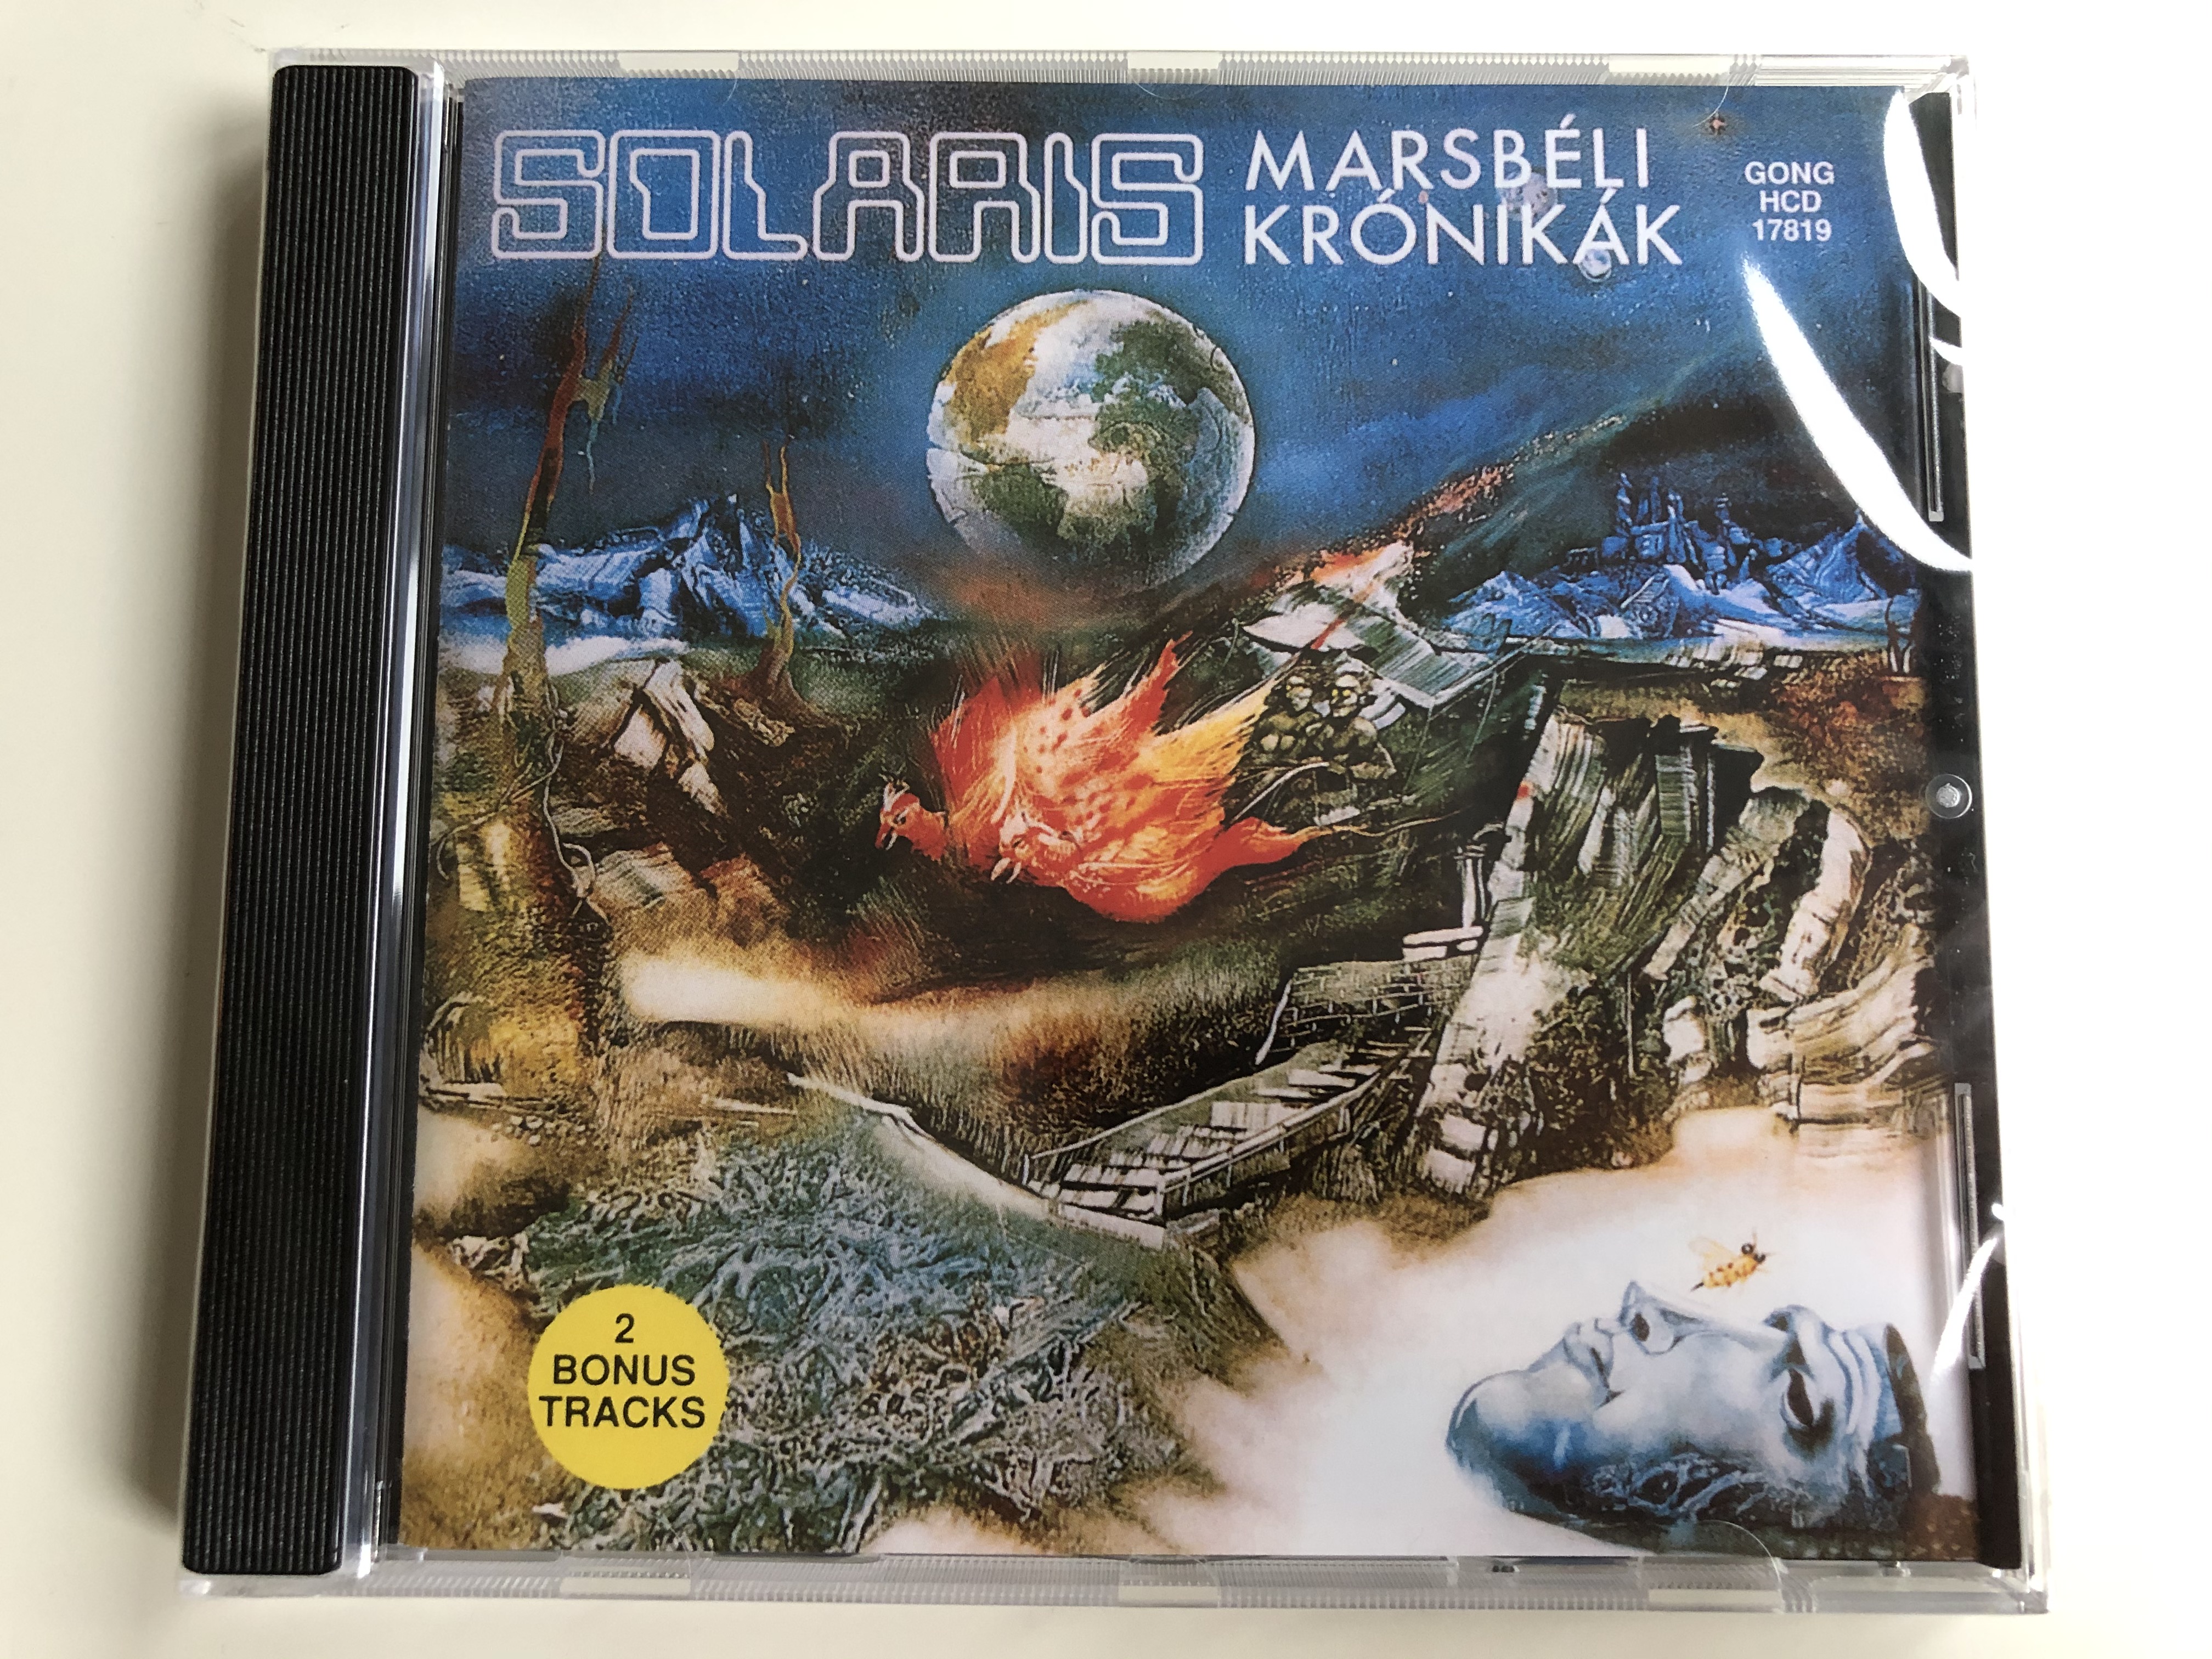 solaris-marsb-li-kr-nik-k-the-martian-chronicles-gong-audio-cd-1995-hcd-17819-1-.jpg